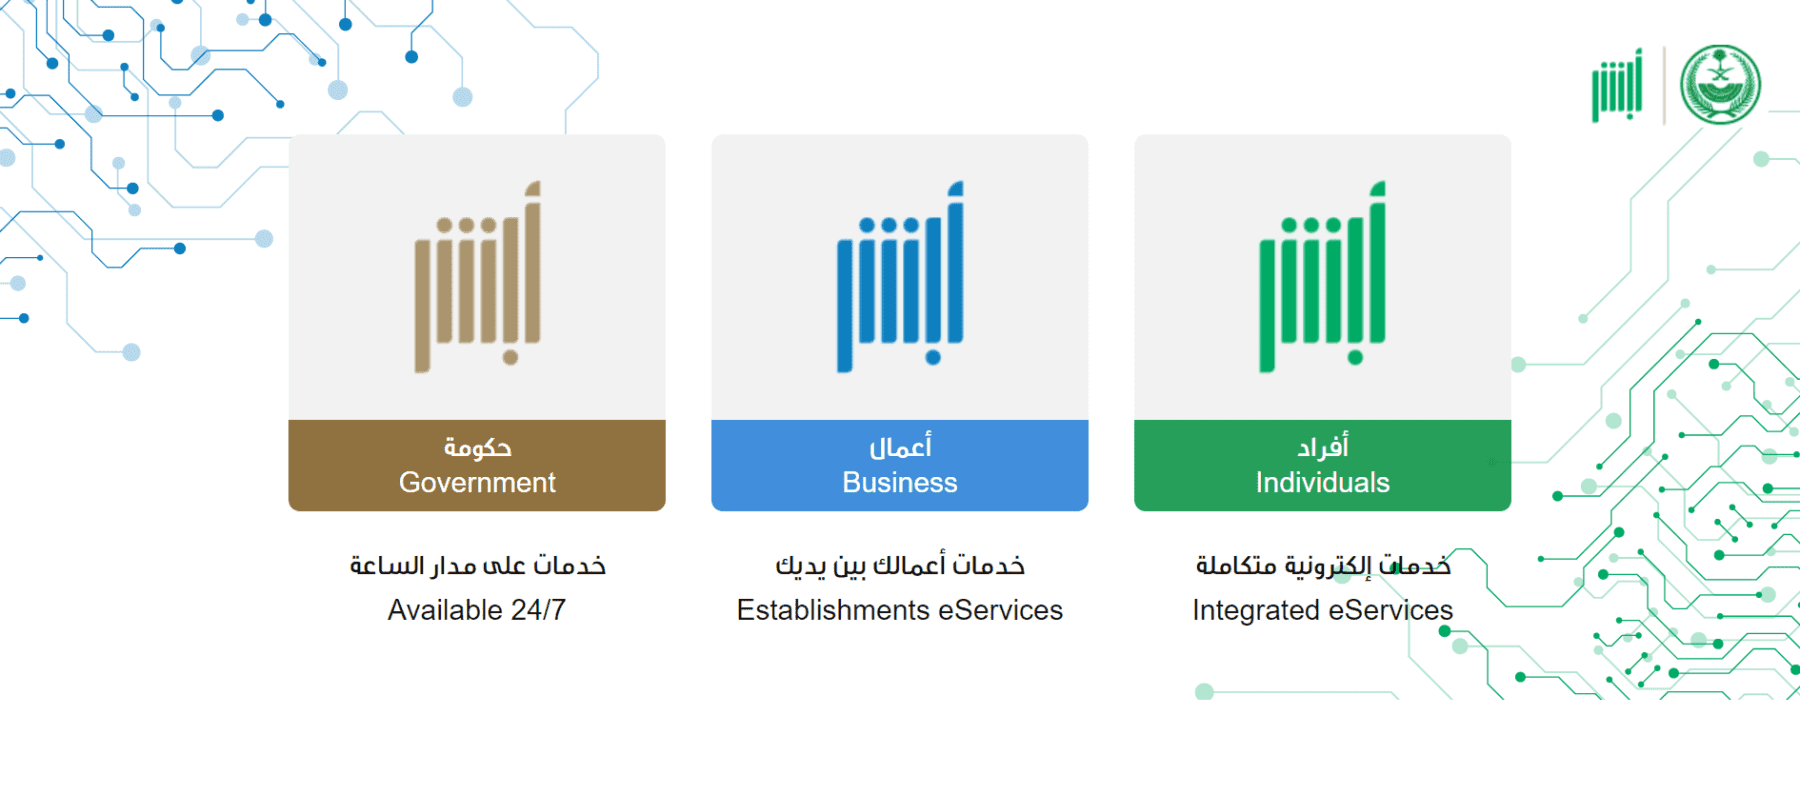 الأعلى منذ بداية العام... تم تنفيذ أكثر من 2 مليون عملية عبر أبشر السعودية